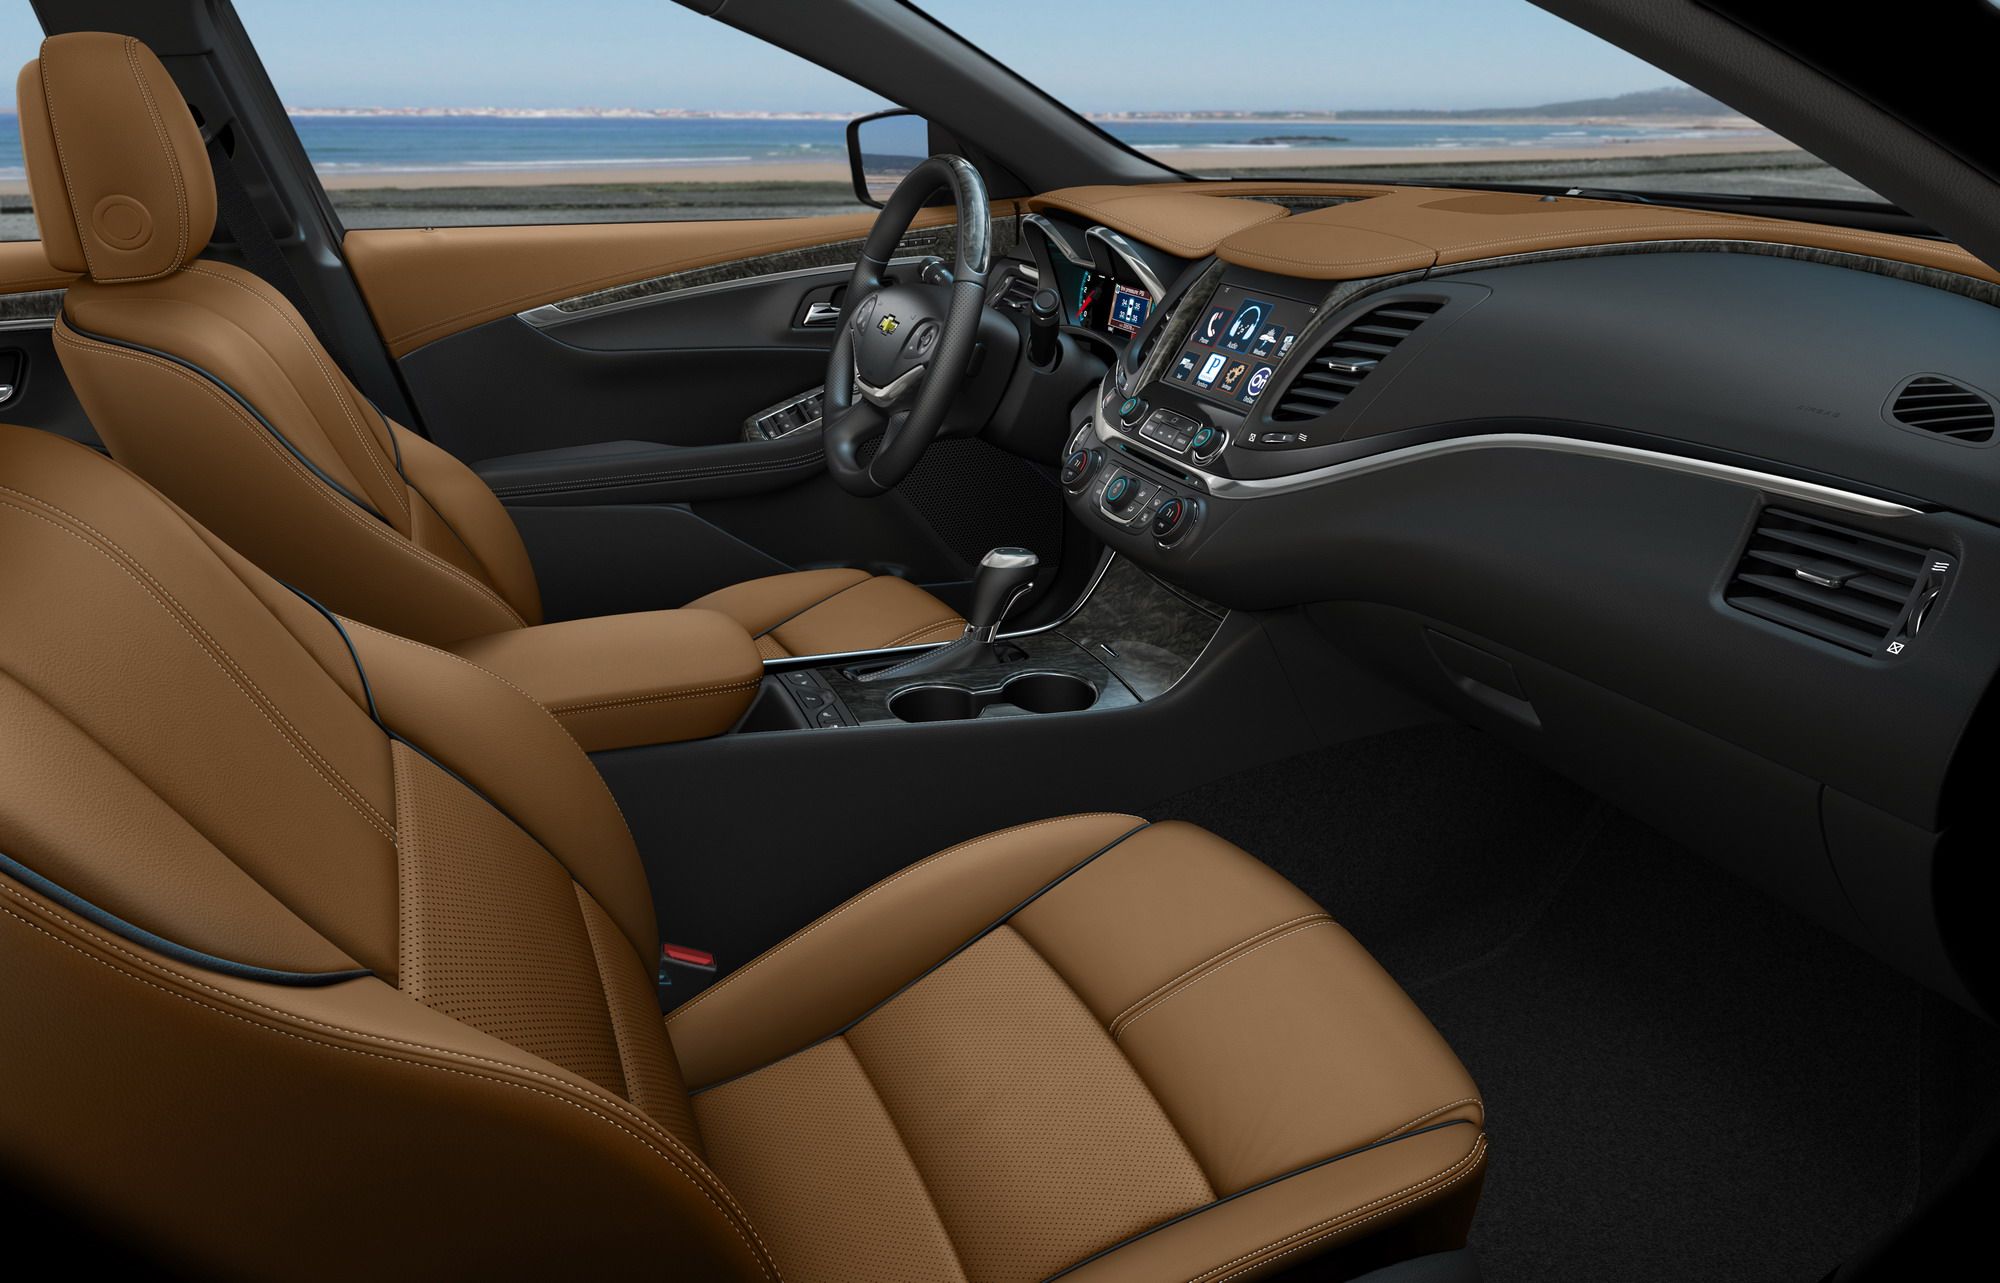 2014 - 2015 Chevrolet Impala